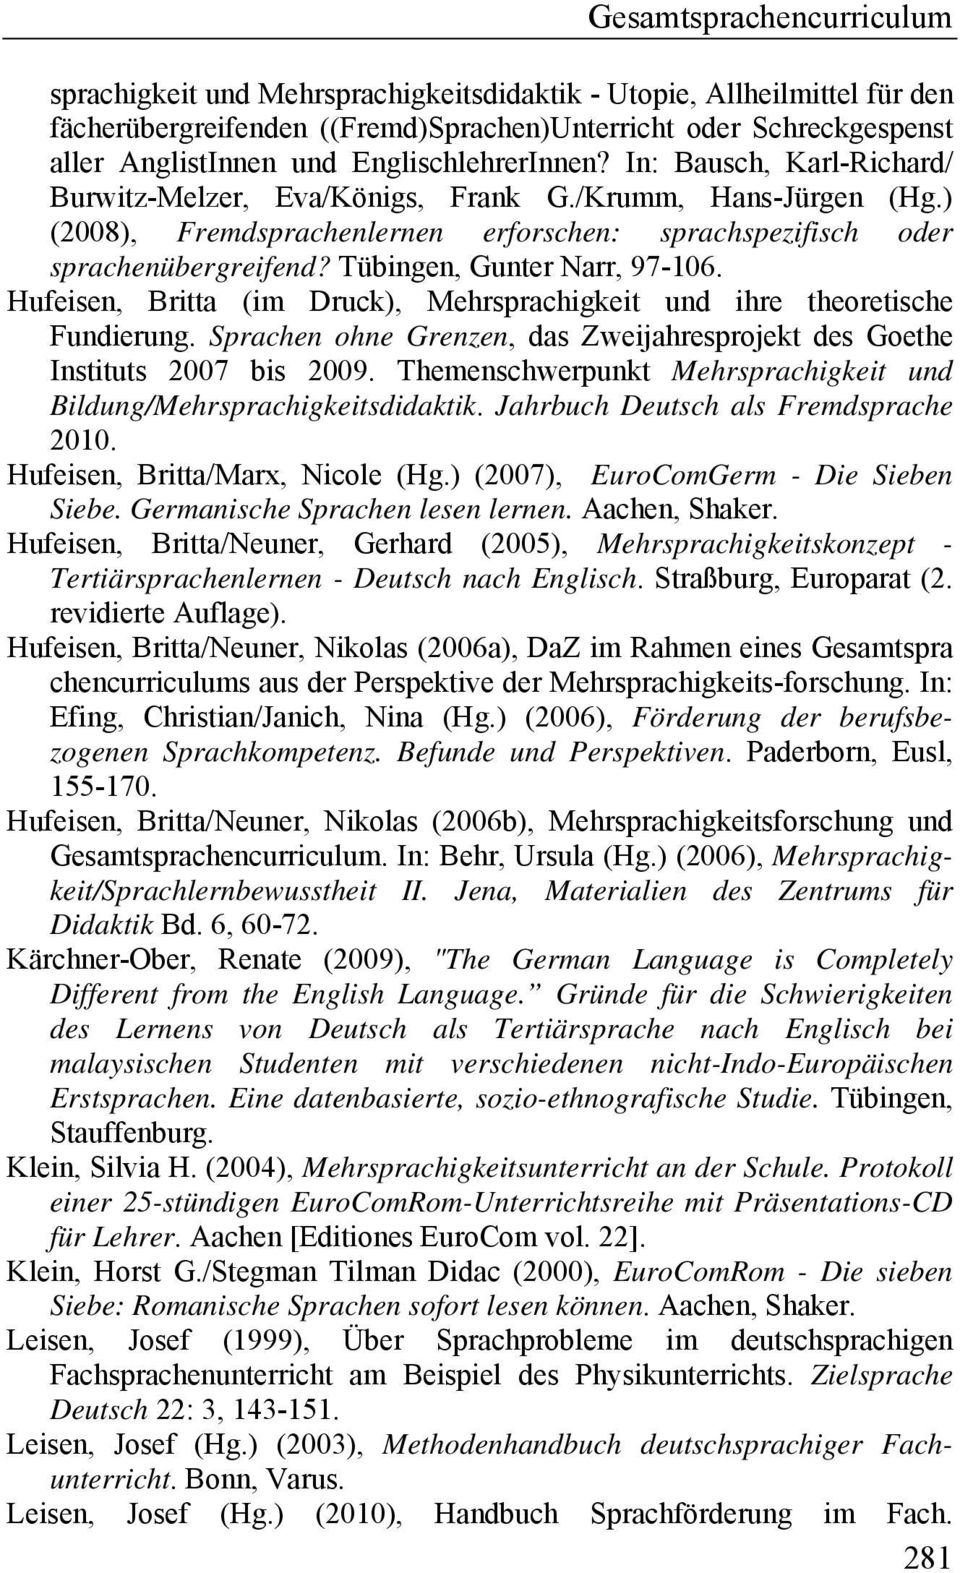 Tübingen, Gunter Narr, 97-106. Hufeisen, Britta (im Druck), Mehrsprachigkeit und ihre theoretische Fundierung. Sprachen ohne Grenzen, das Zweijahresprojekt des Goethe Instituts 2007 bis 2009.